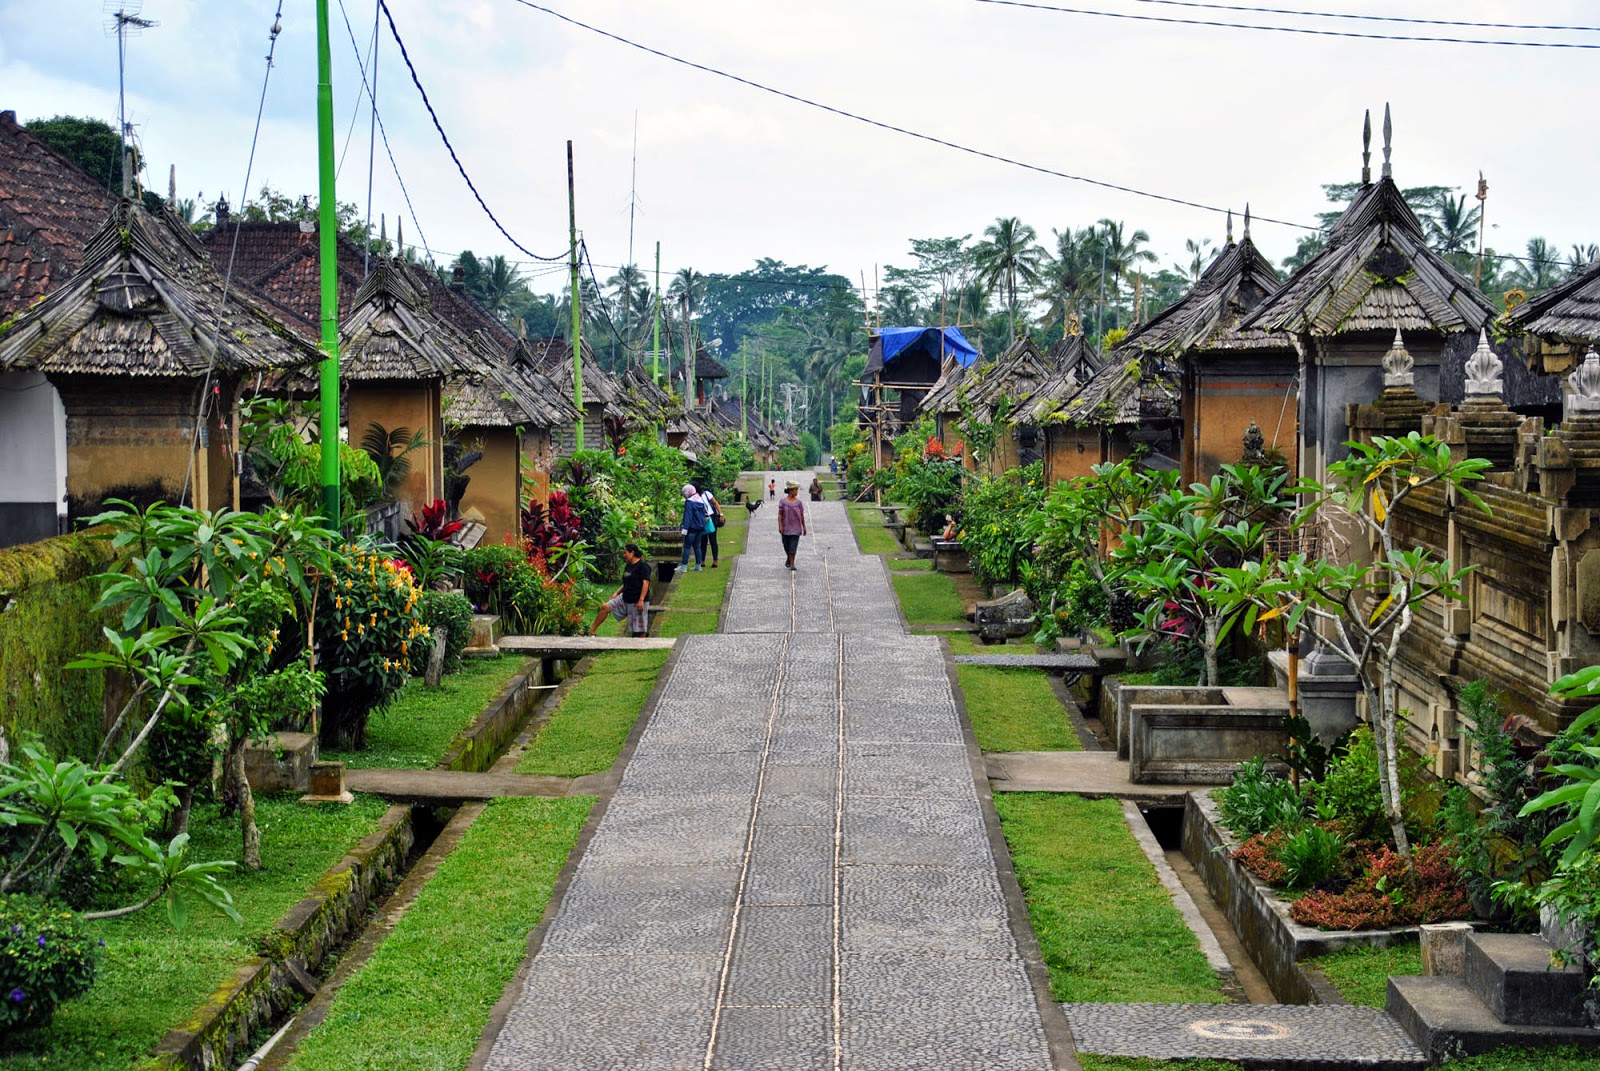 Desa Adat Penglipuran, the Trully Bali )